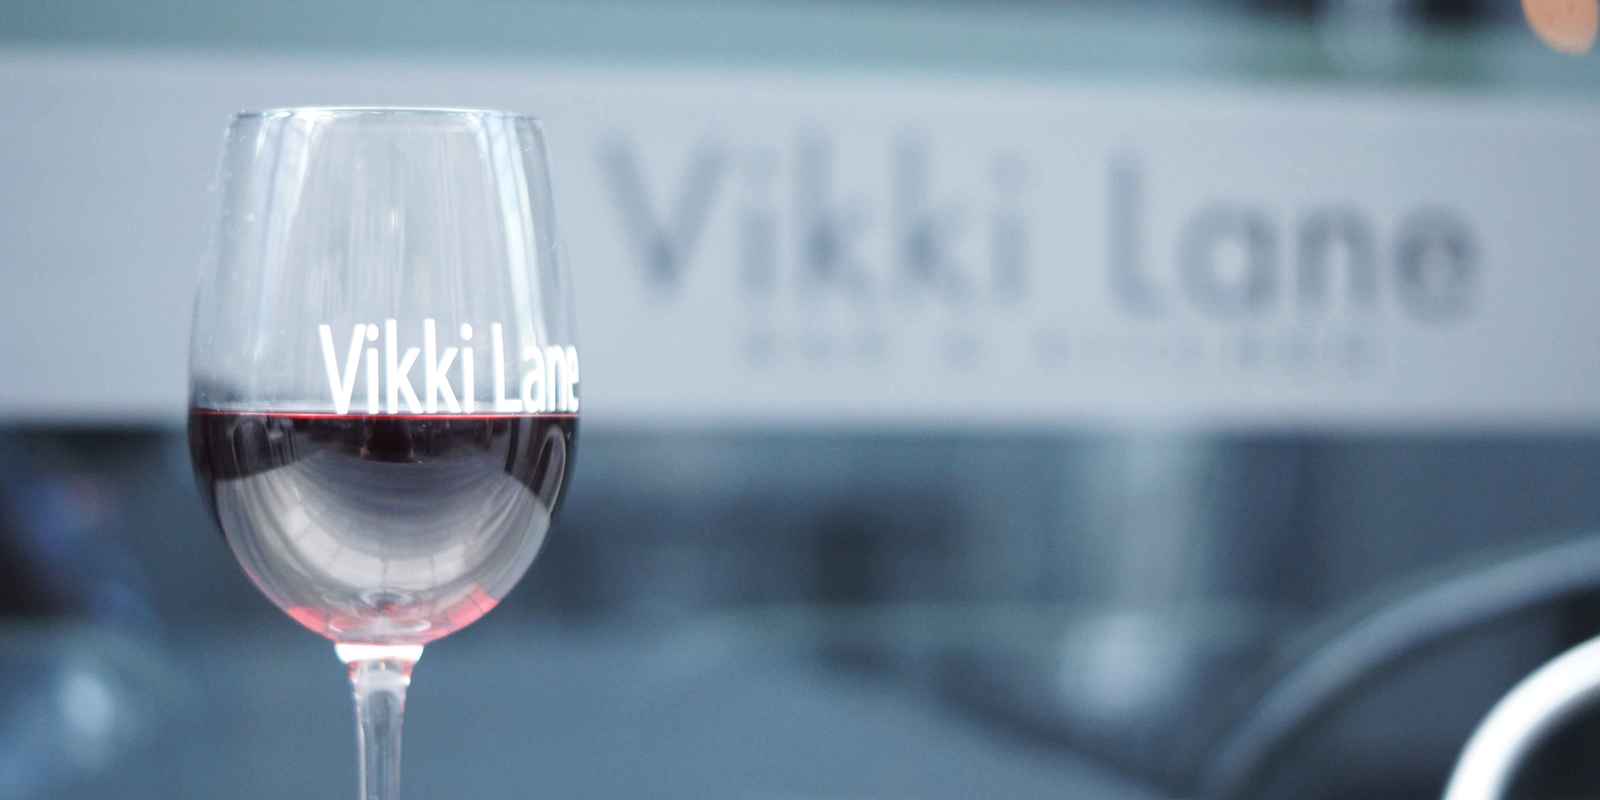 vikki lane bar and kitchen